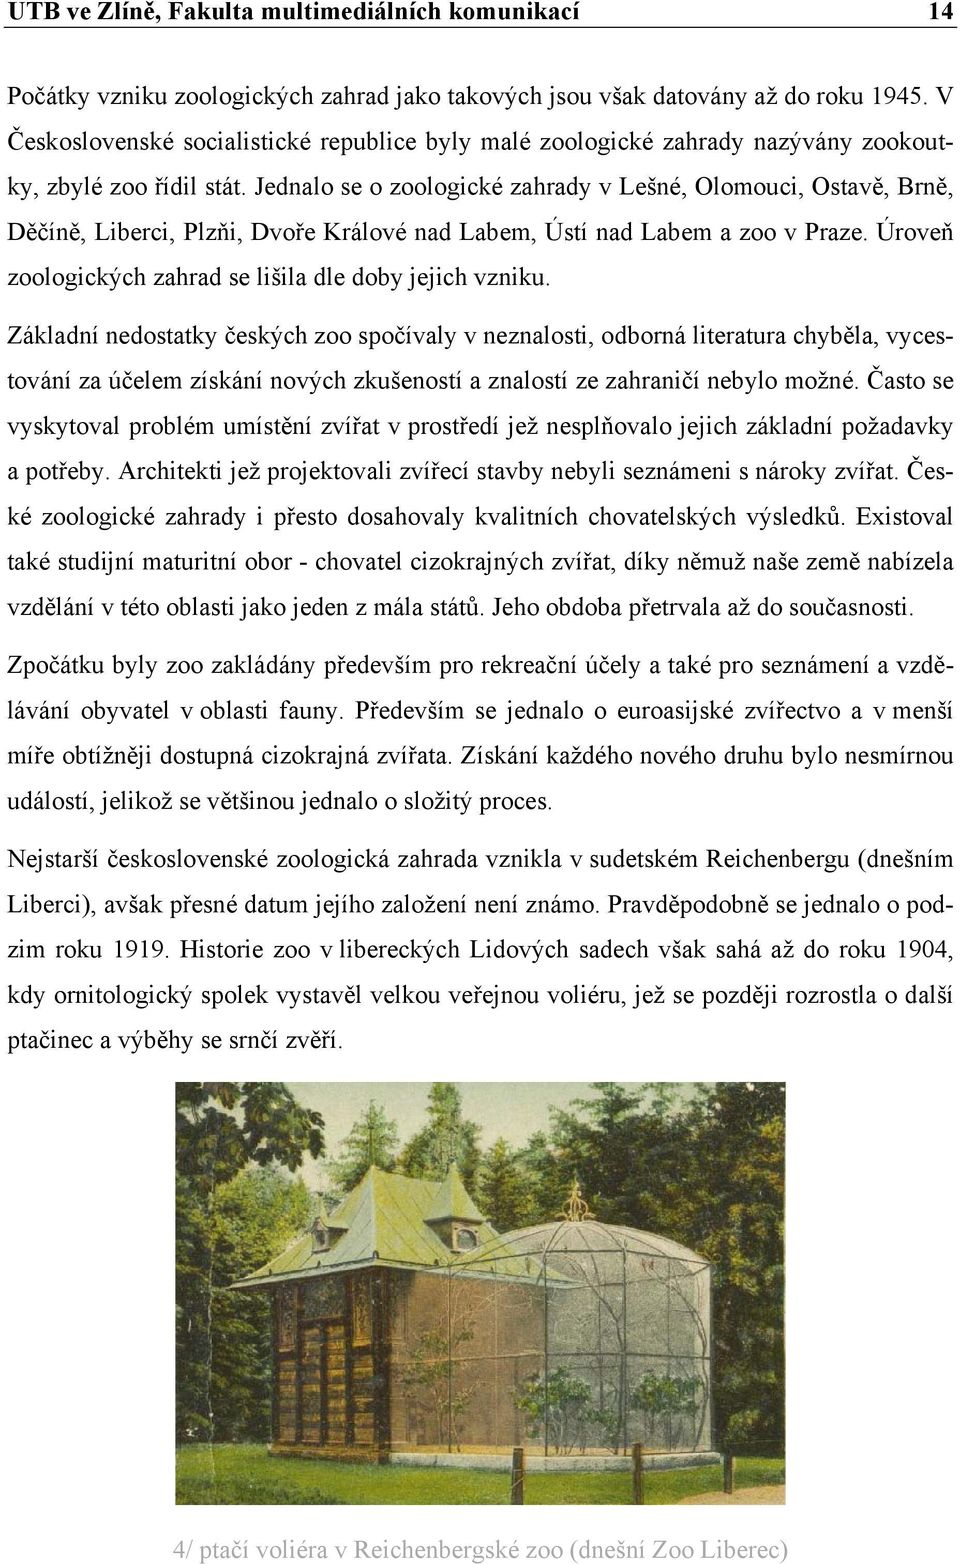 Jednalo se o zoologické zahrady v Lešné, Olomouci, Ostavě, Brně, Děčíně, Liberci, Plzňi, Dvoře Králové nad Labem, Ústí nad Labem a zoo v Praze.